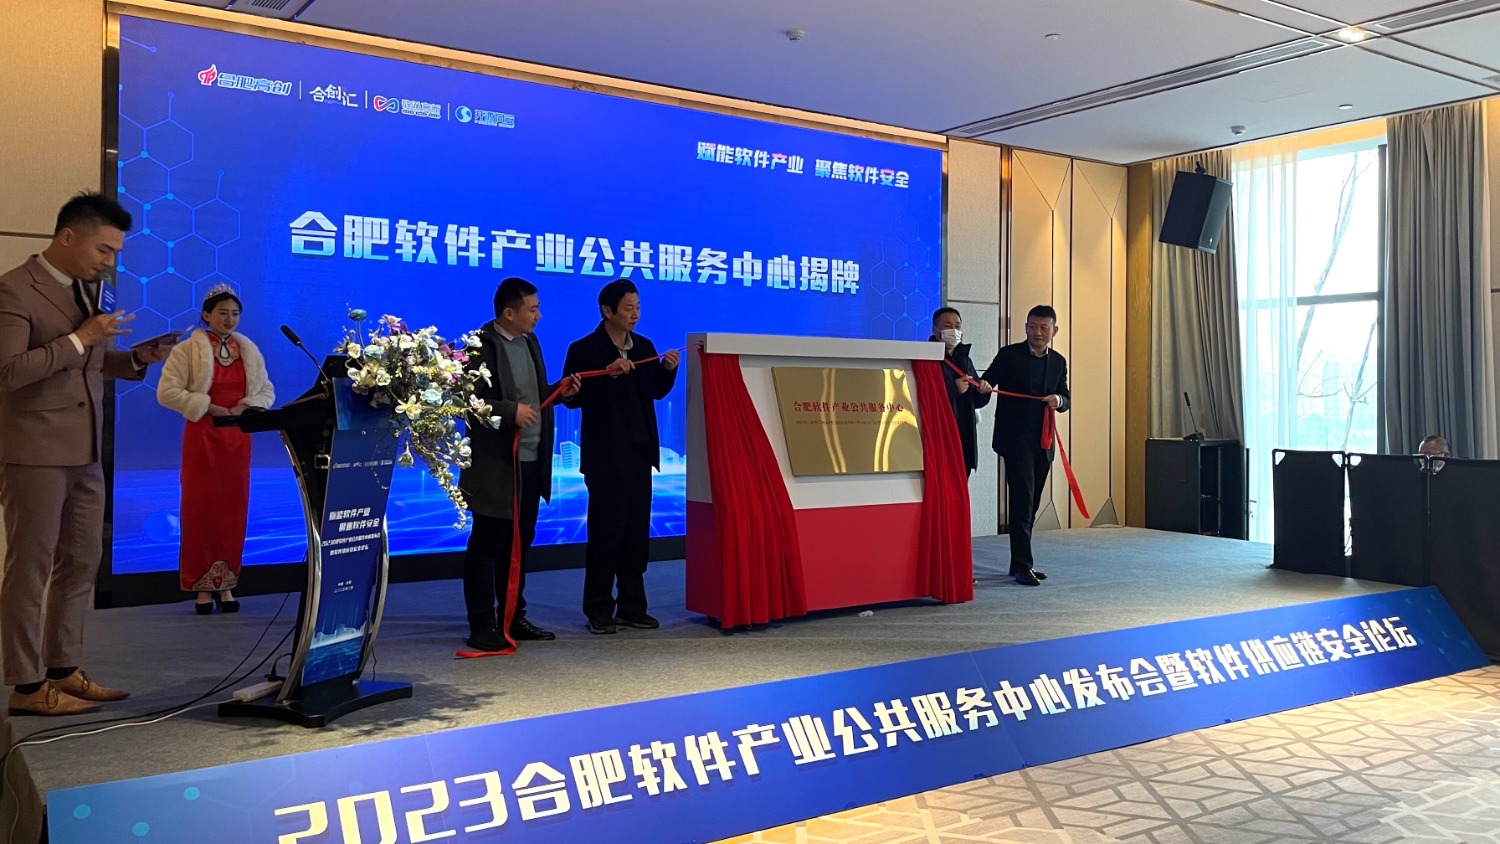 安徽合肥软件产业公共服务中心正式揭牌